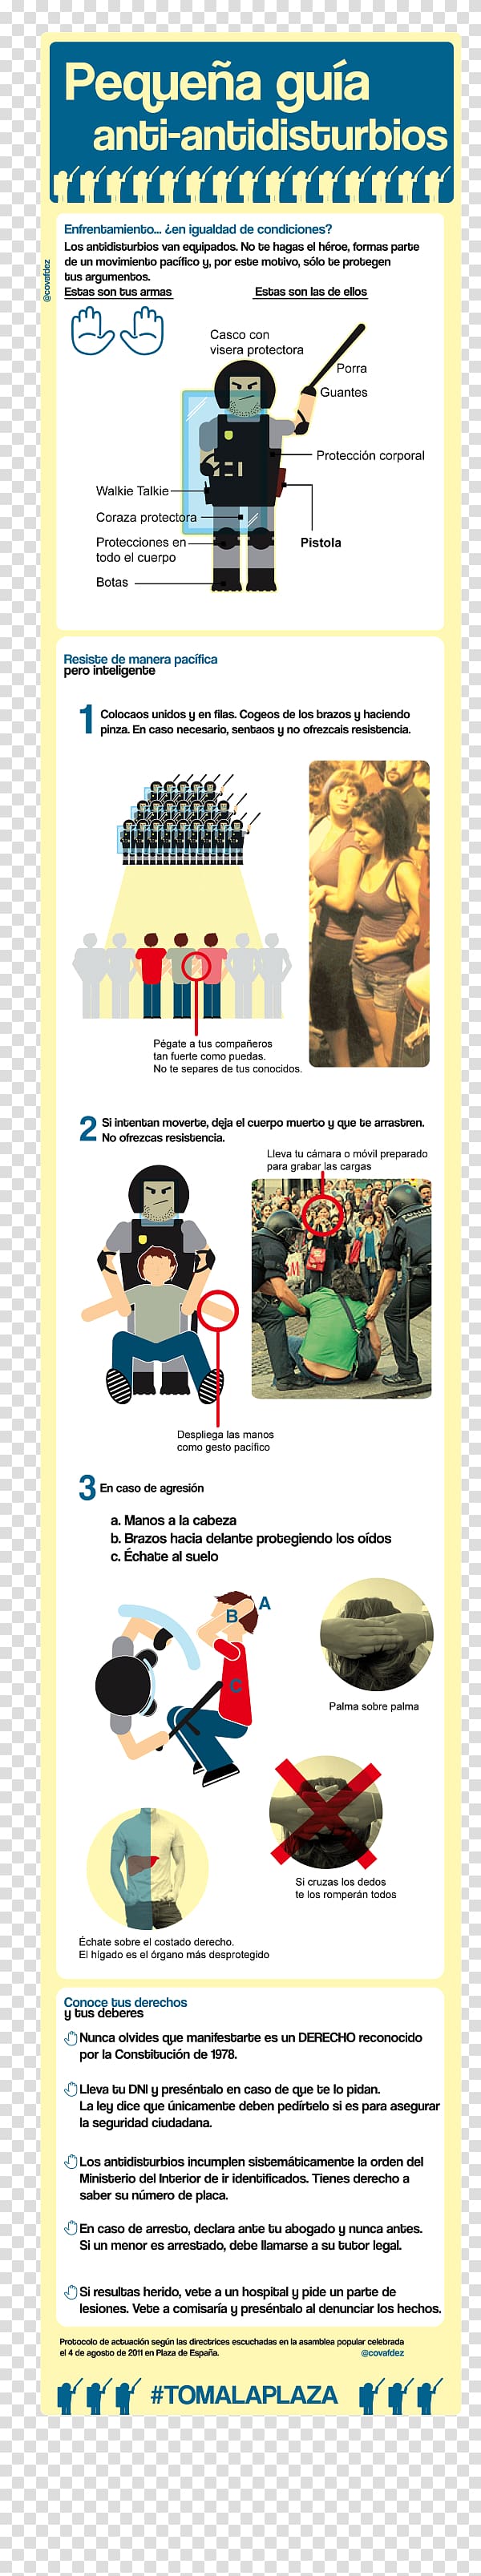 Plaça de Catalunya Graphic design Desalojo, Education infographic transparent background PNG clipart